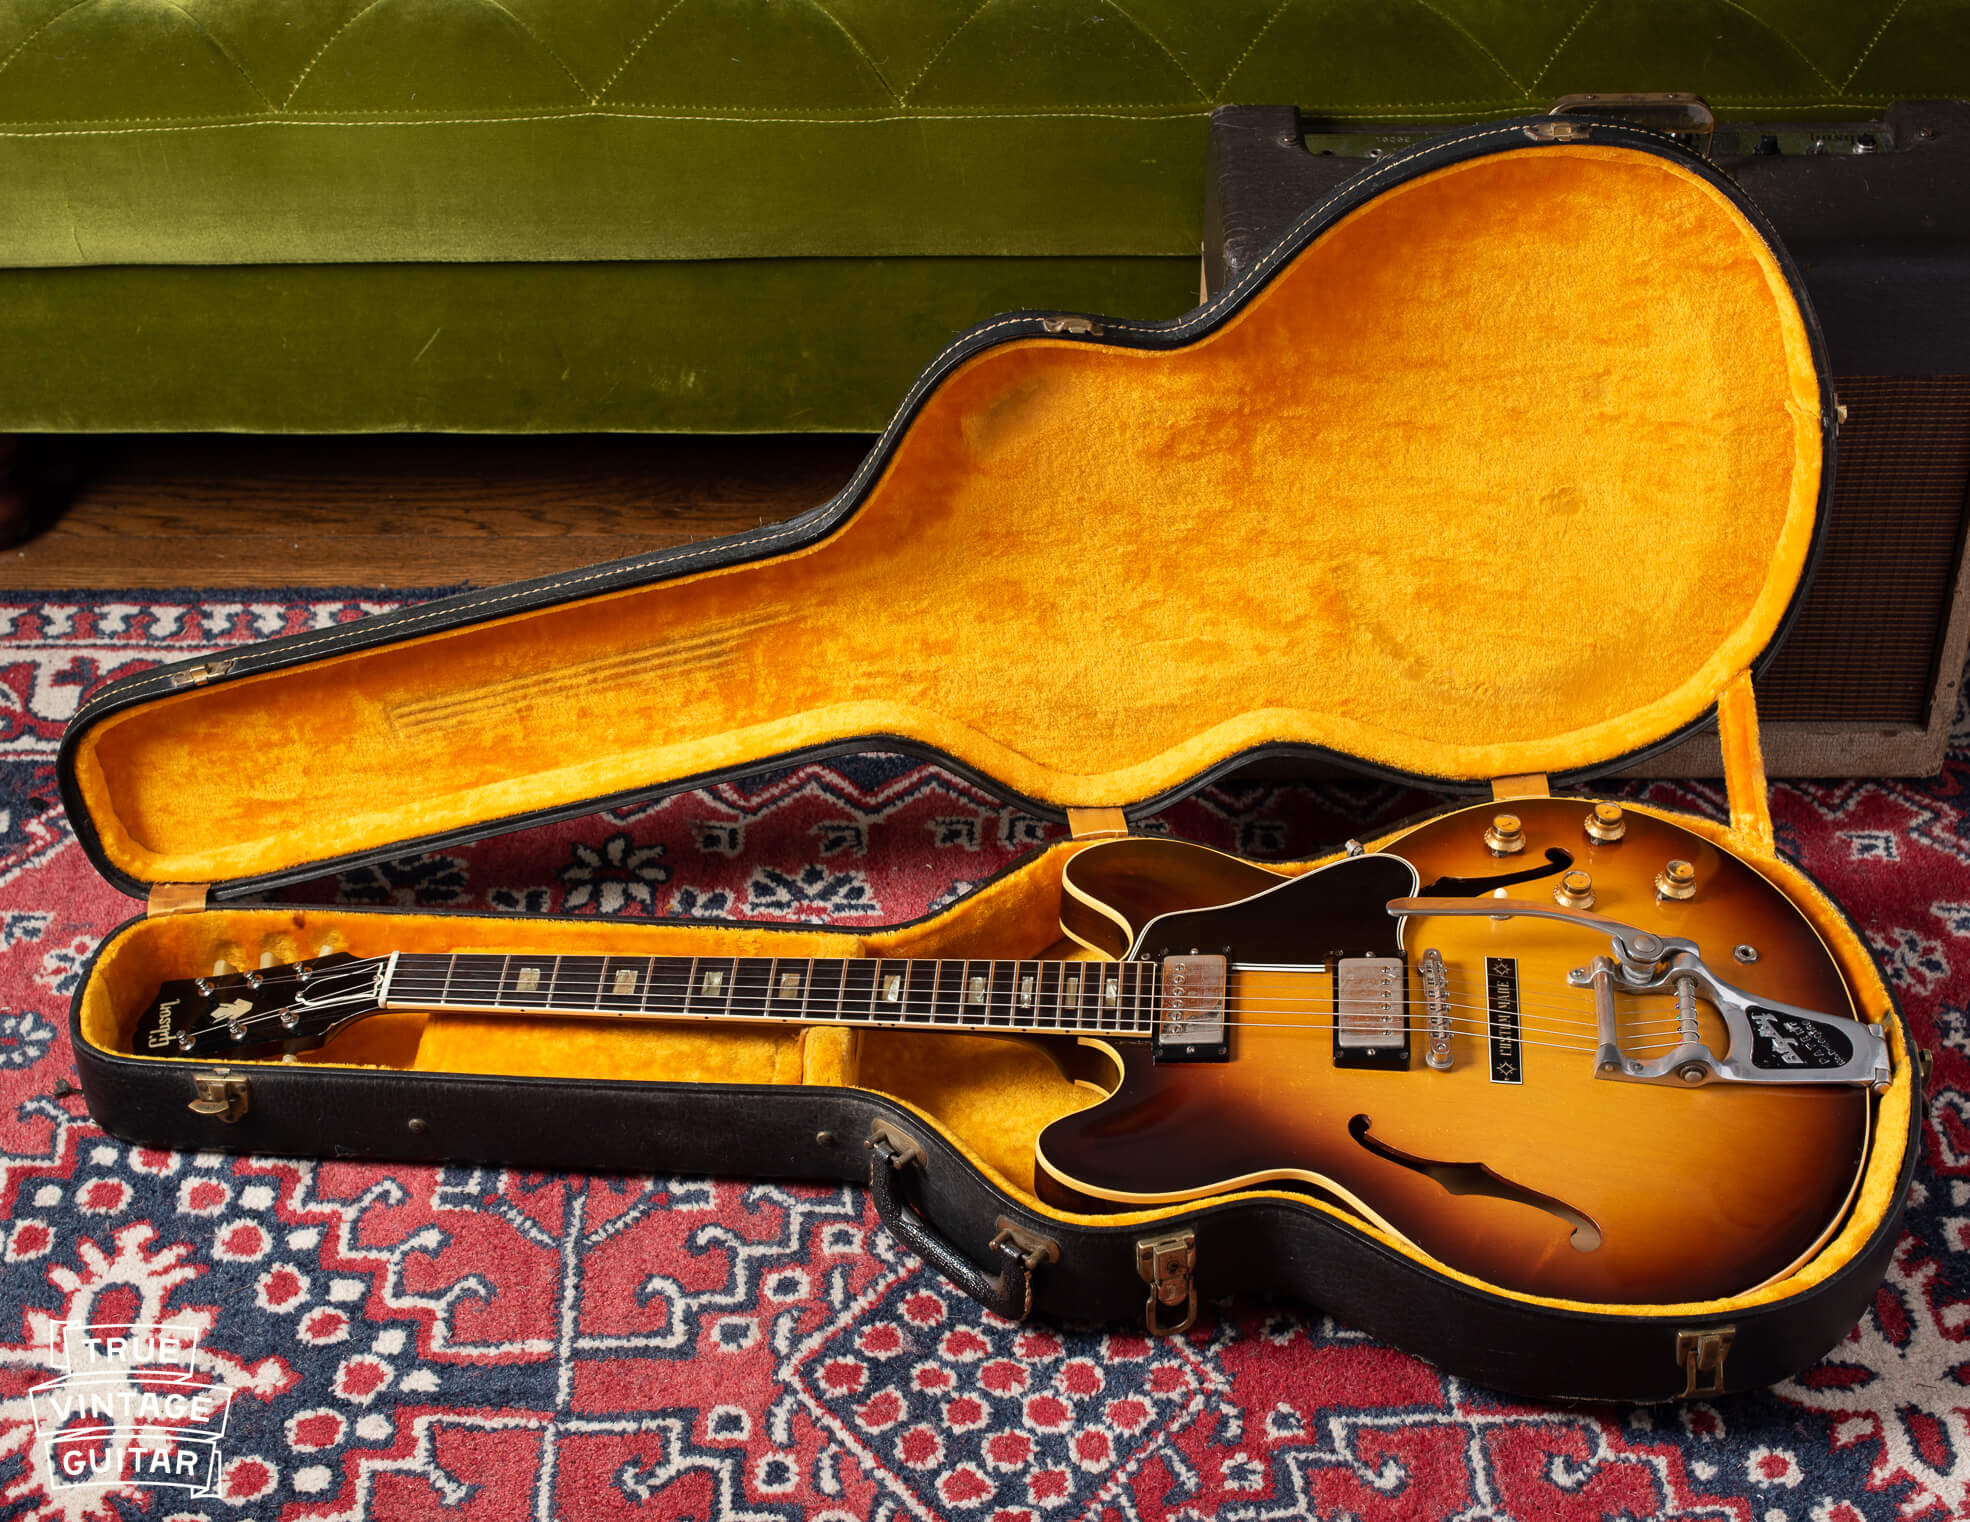 1964 Gibson ES-335 with Sunburst finish, Bigsby tailpiece, in original case